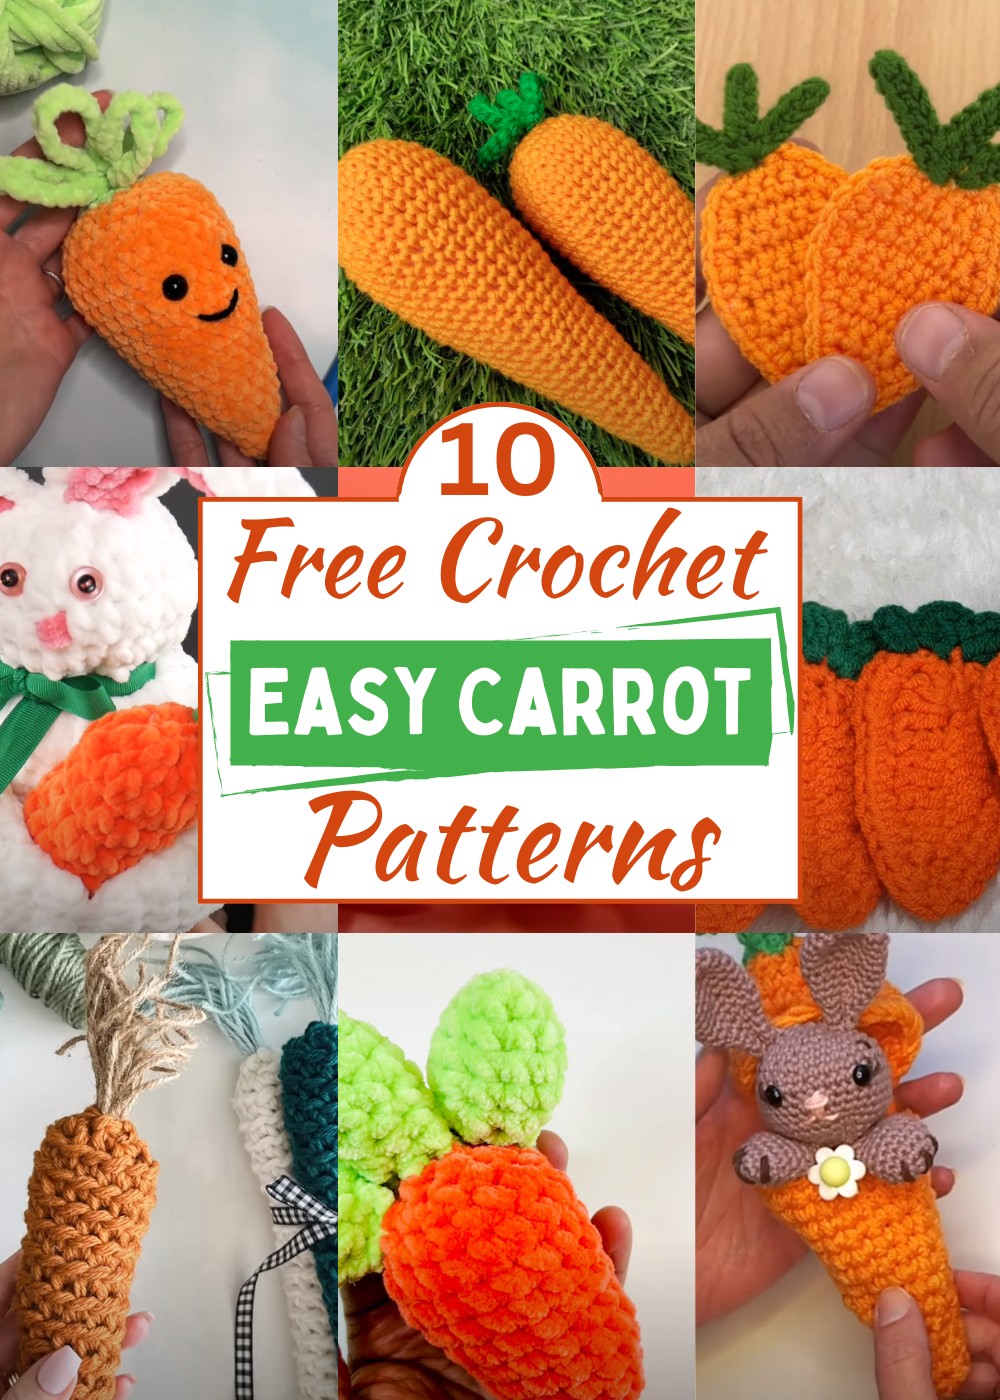 Crochet Carrot Patterns